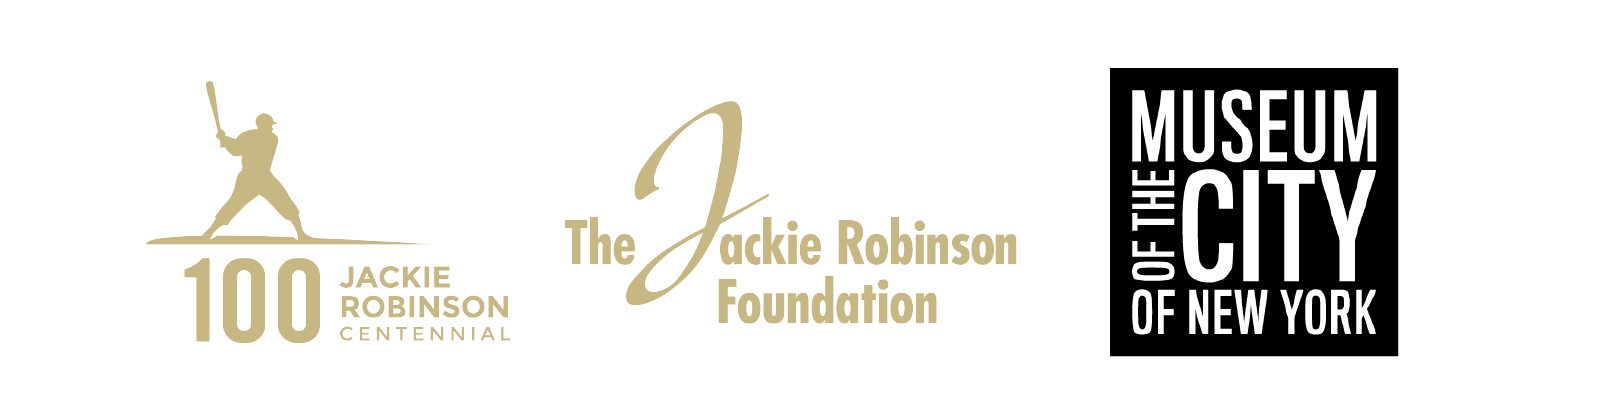 Logotipo del Centenario de Jackie Robinson, logotipo de la Fundación Jackie Robinson, logotipo del Museo de la Ciudad de Nueva York